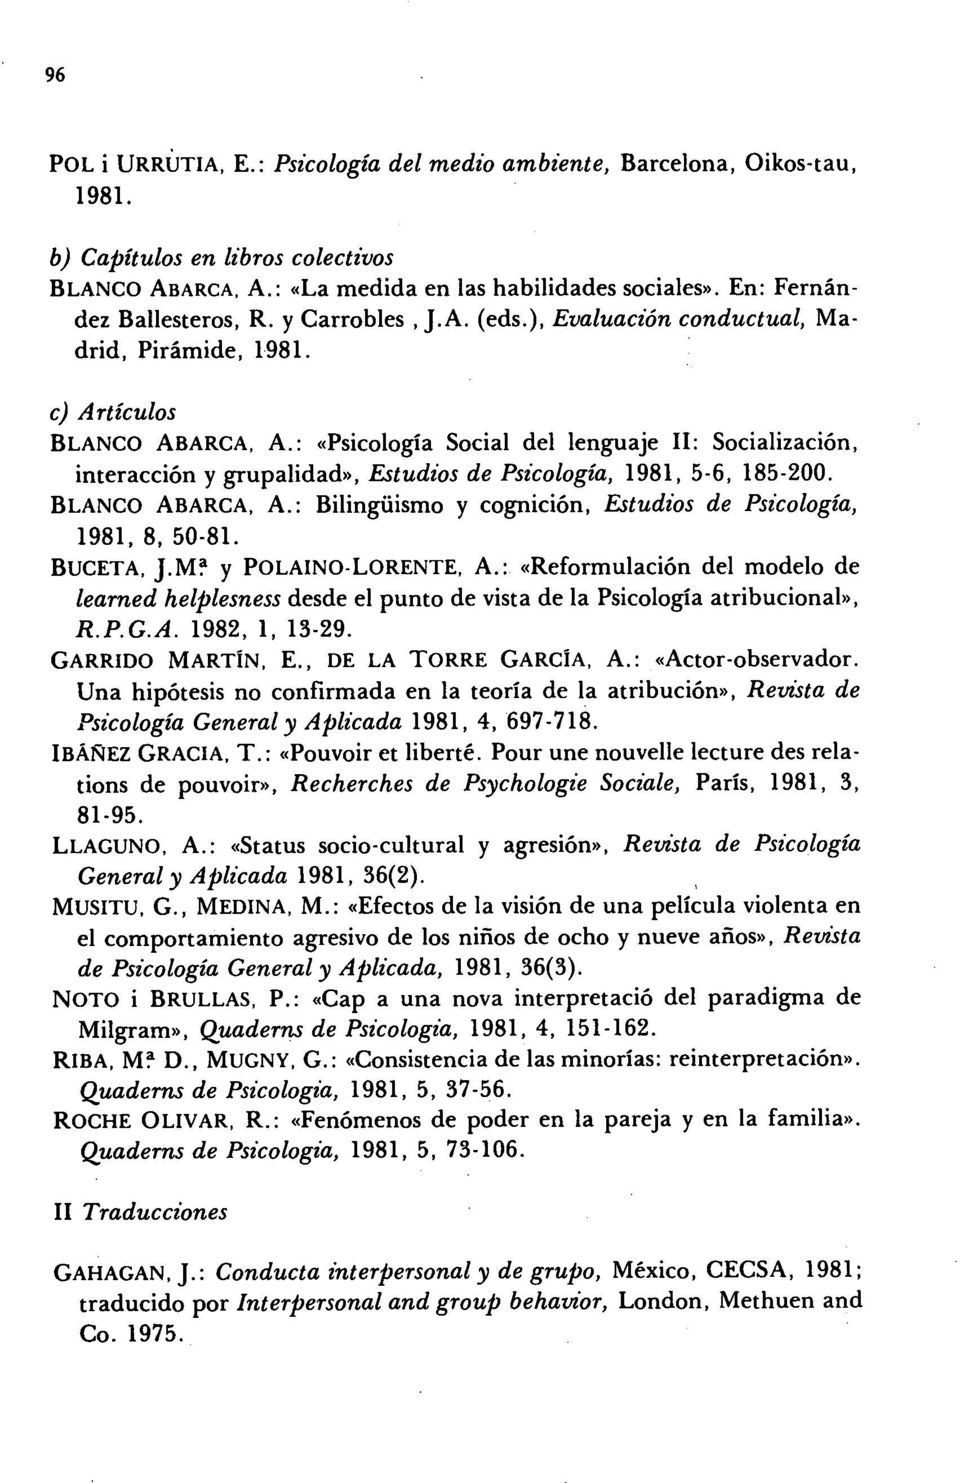 : «Psicología Social del lenguaje 11: Socialización, interacción y grupalidad)), Estudios de Psicologia, 1981, 5-6, 185-200. BLANCO ABARCA, A.